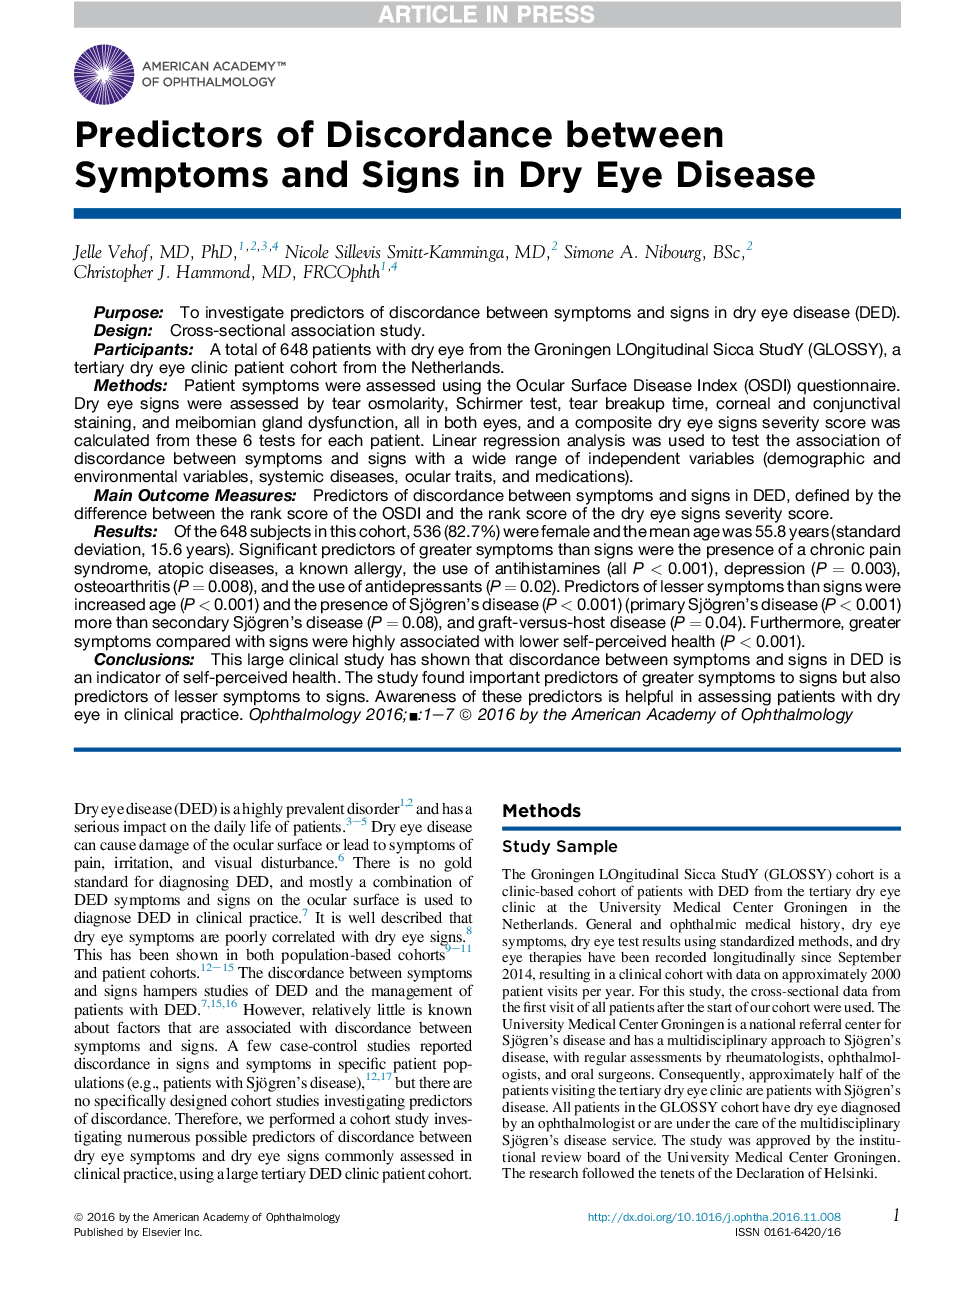 پیش بینی های اختلاف بین علائم و نشانه ها در بیماری های خشکی چشم 